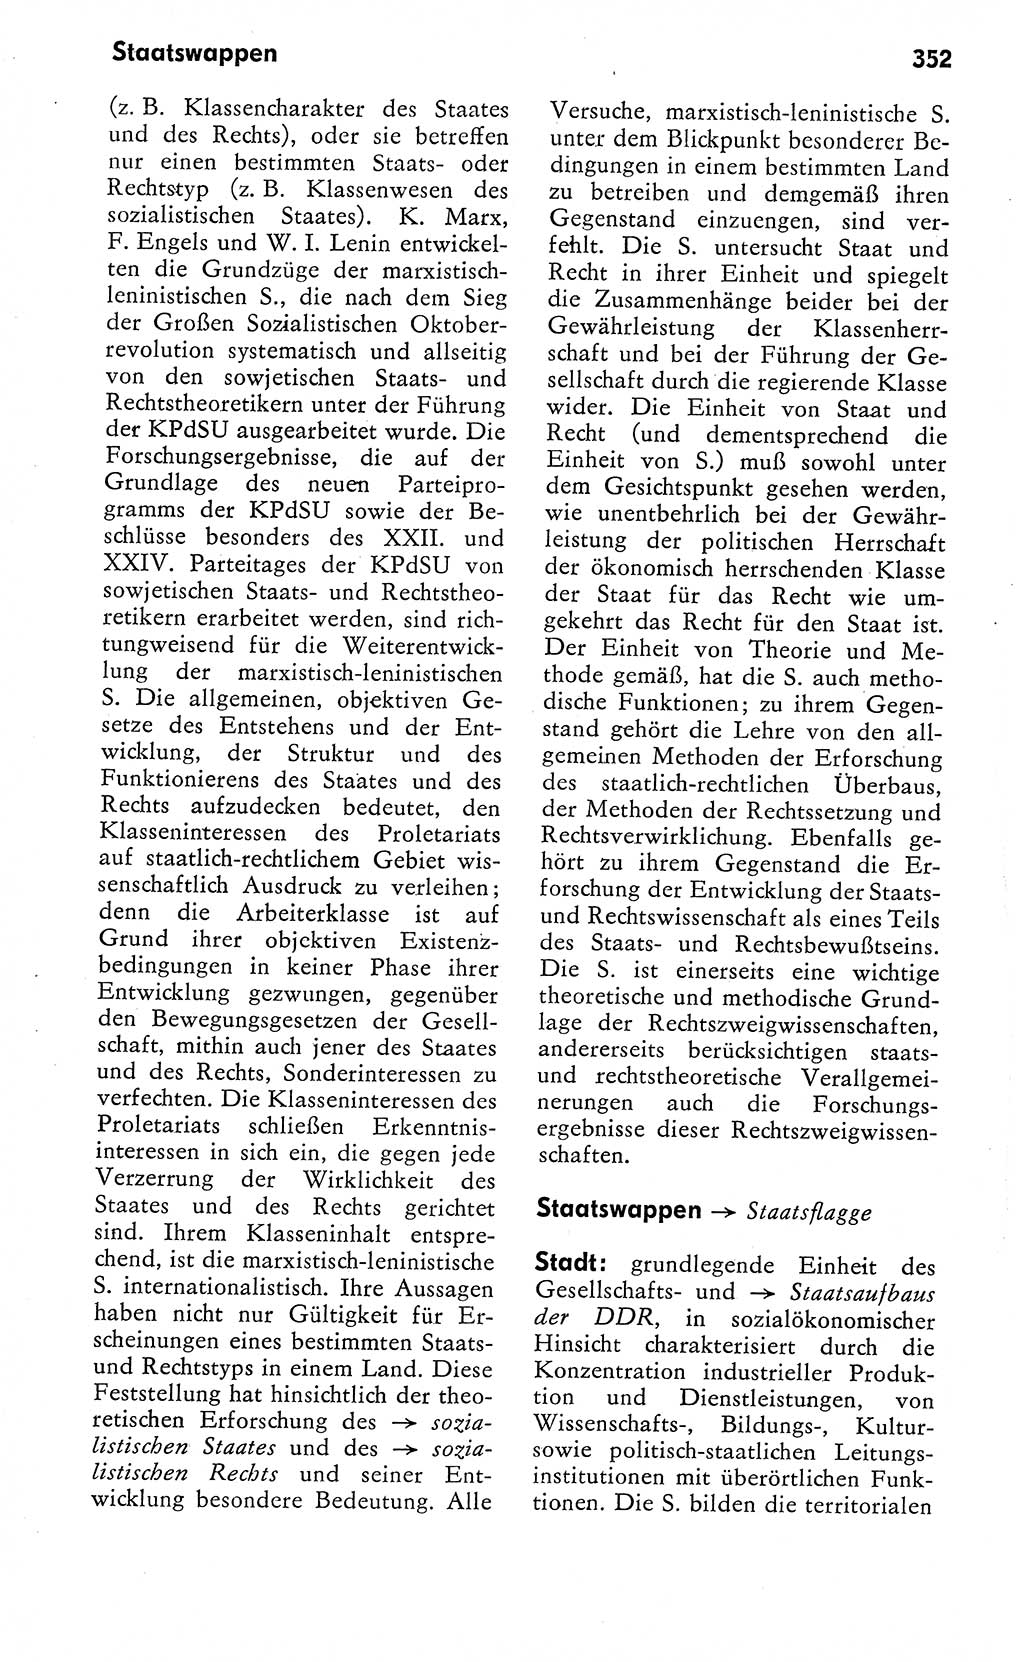 Wörterbuch zum sozialistischen Staat [Deutsche Demokratische Republik (DDR)] 1974, Seite 352 (Wb. soz. St. DDR 1974, S. 352)